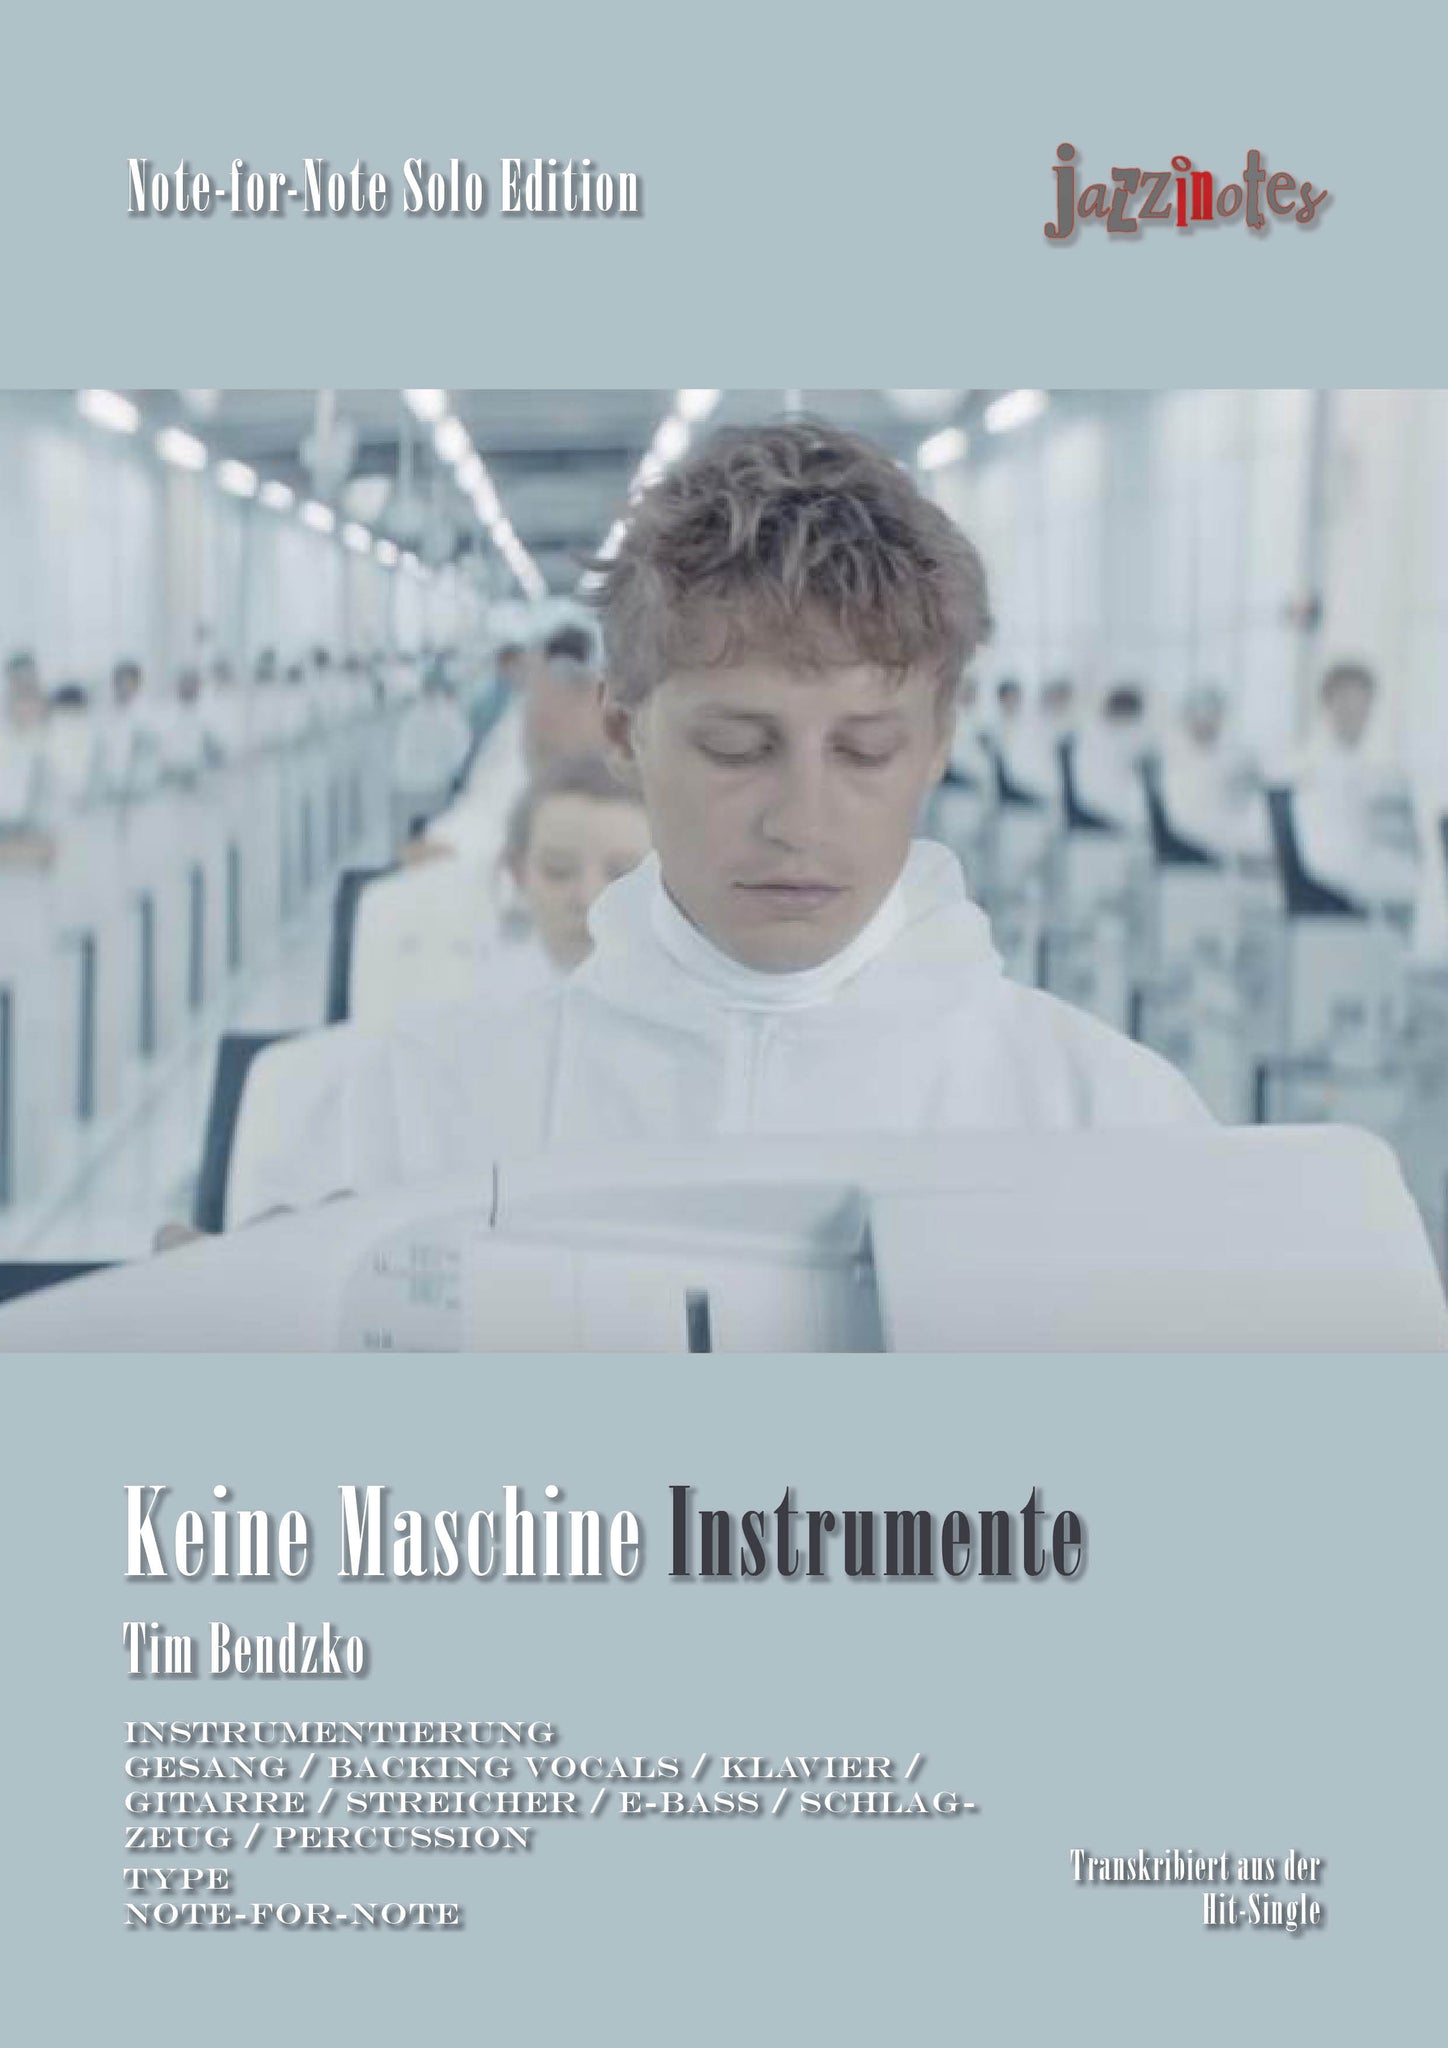 Bendzko, Tim: Keine Instruments - Sheet Music Download – jazzinotes